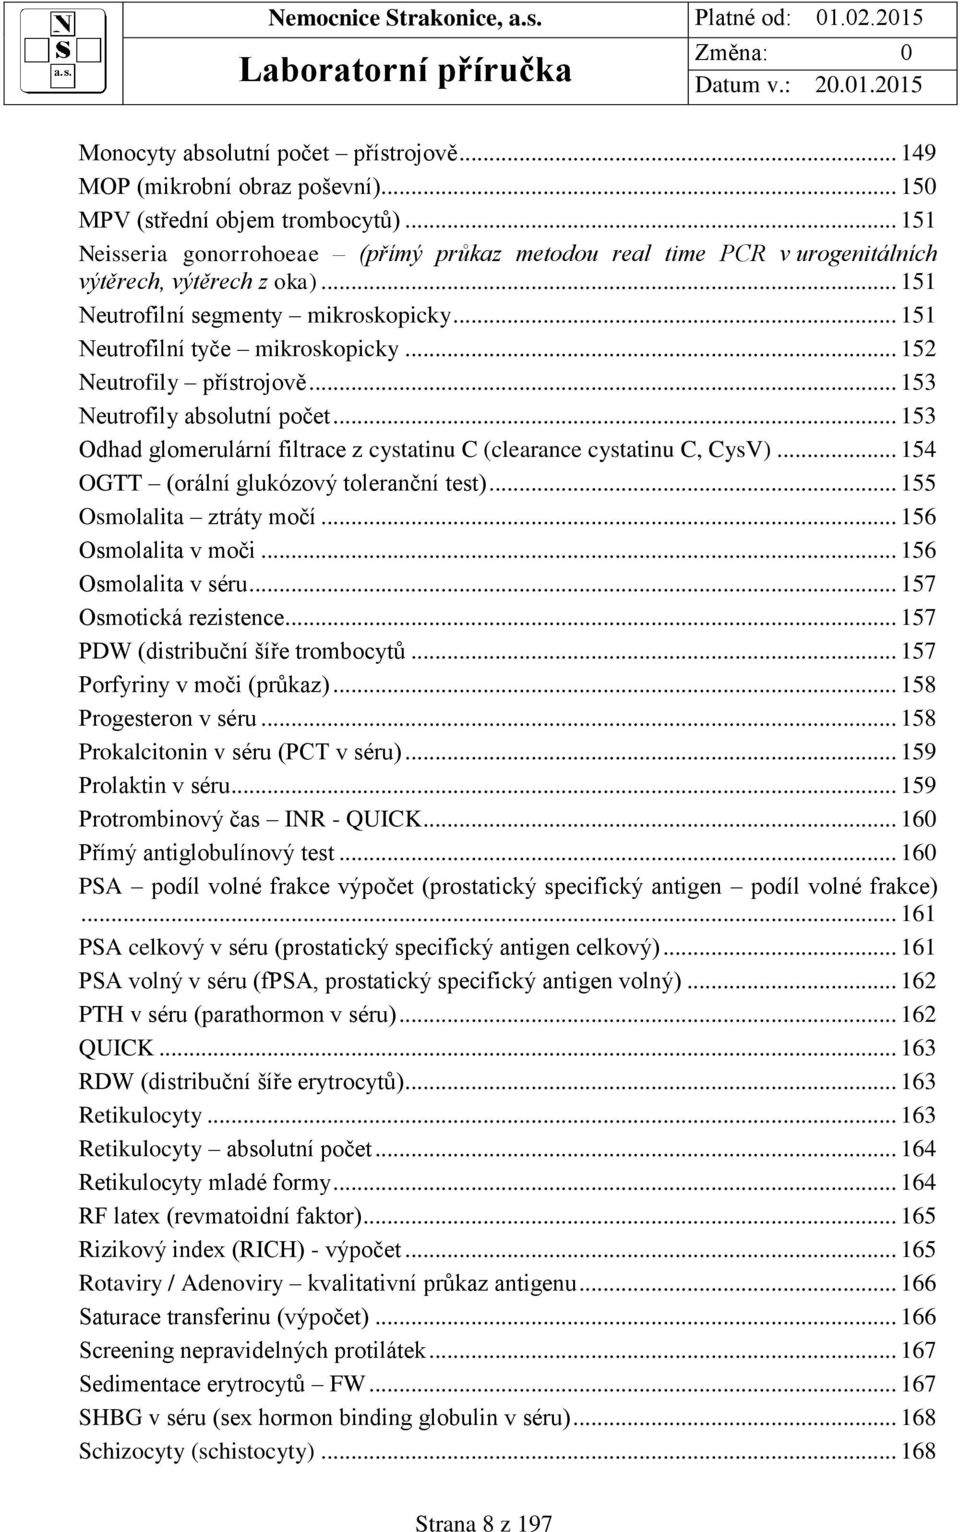 .. 152 Neutrofily přístrojově... 153 Neutrofily absolutní počet... 153 Odhad glomerulární filtrace z cystatinu C (clearance cystatinu C, CysV)... 154 OGTT (orální glukózový toleranční test).